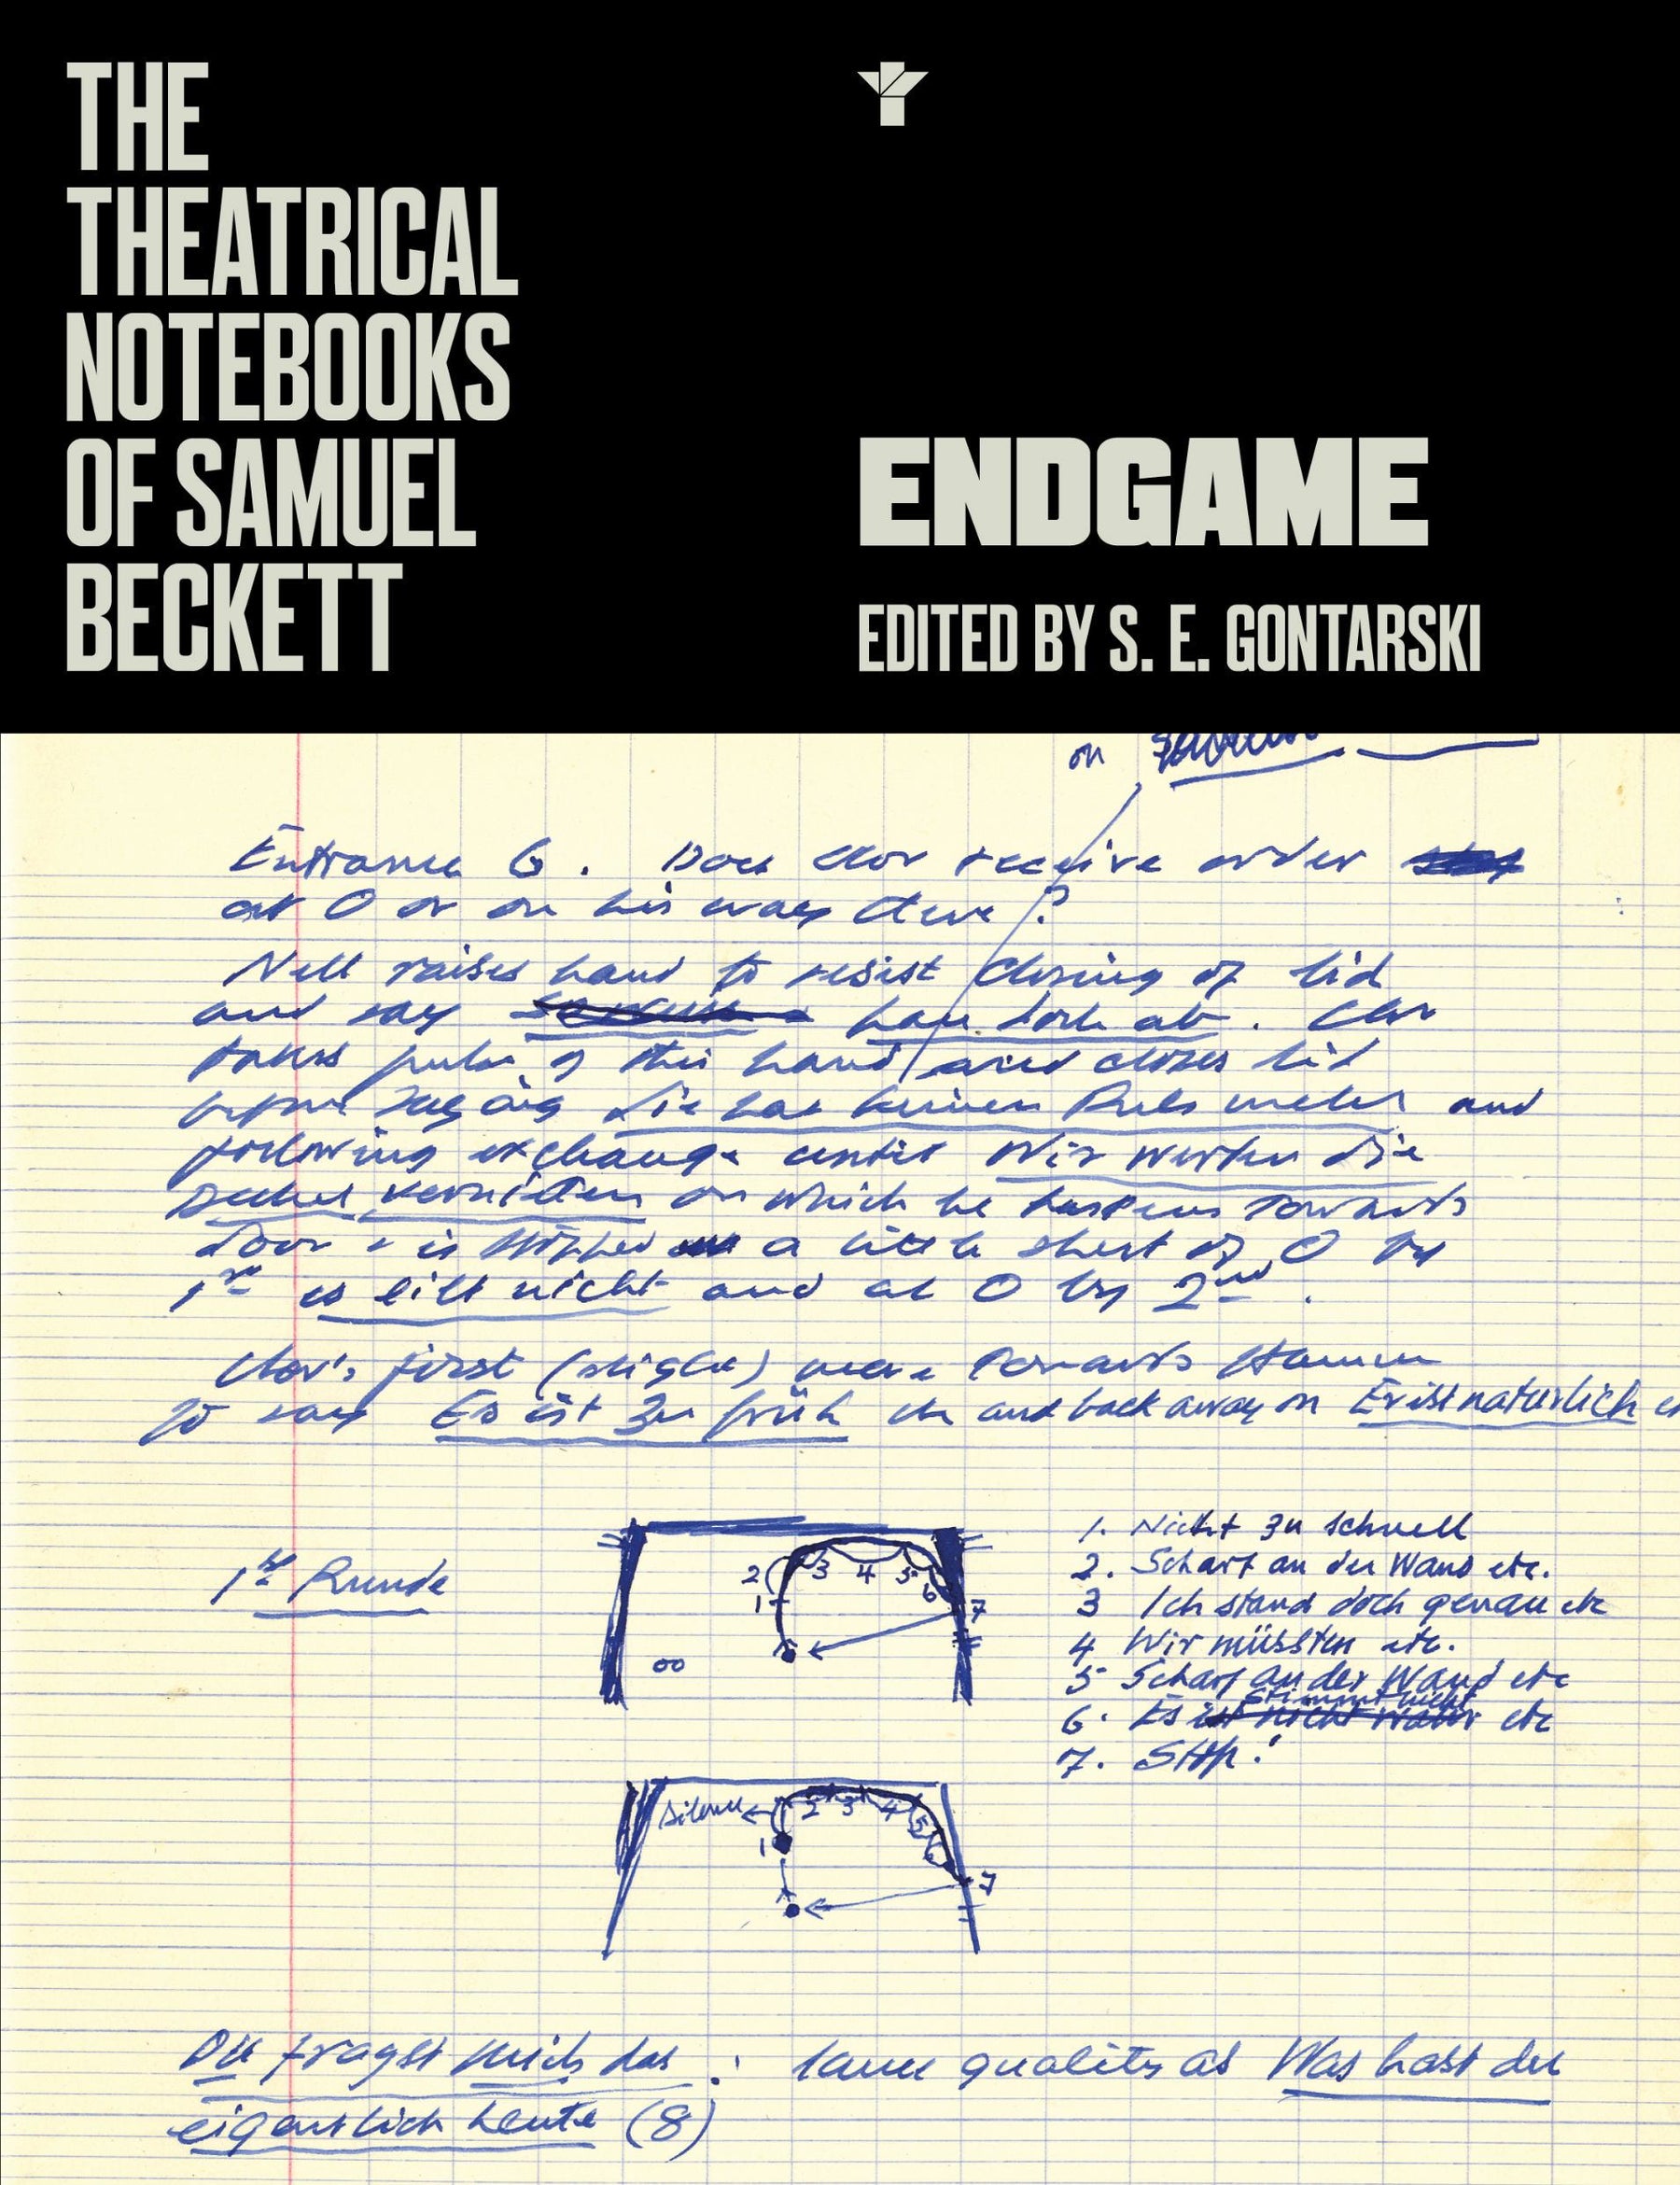 The Theatrical Notebooks of Samuel Beckett: Endgame